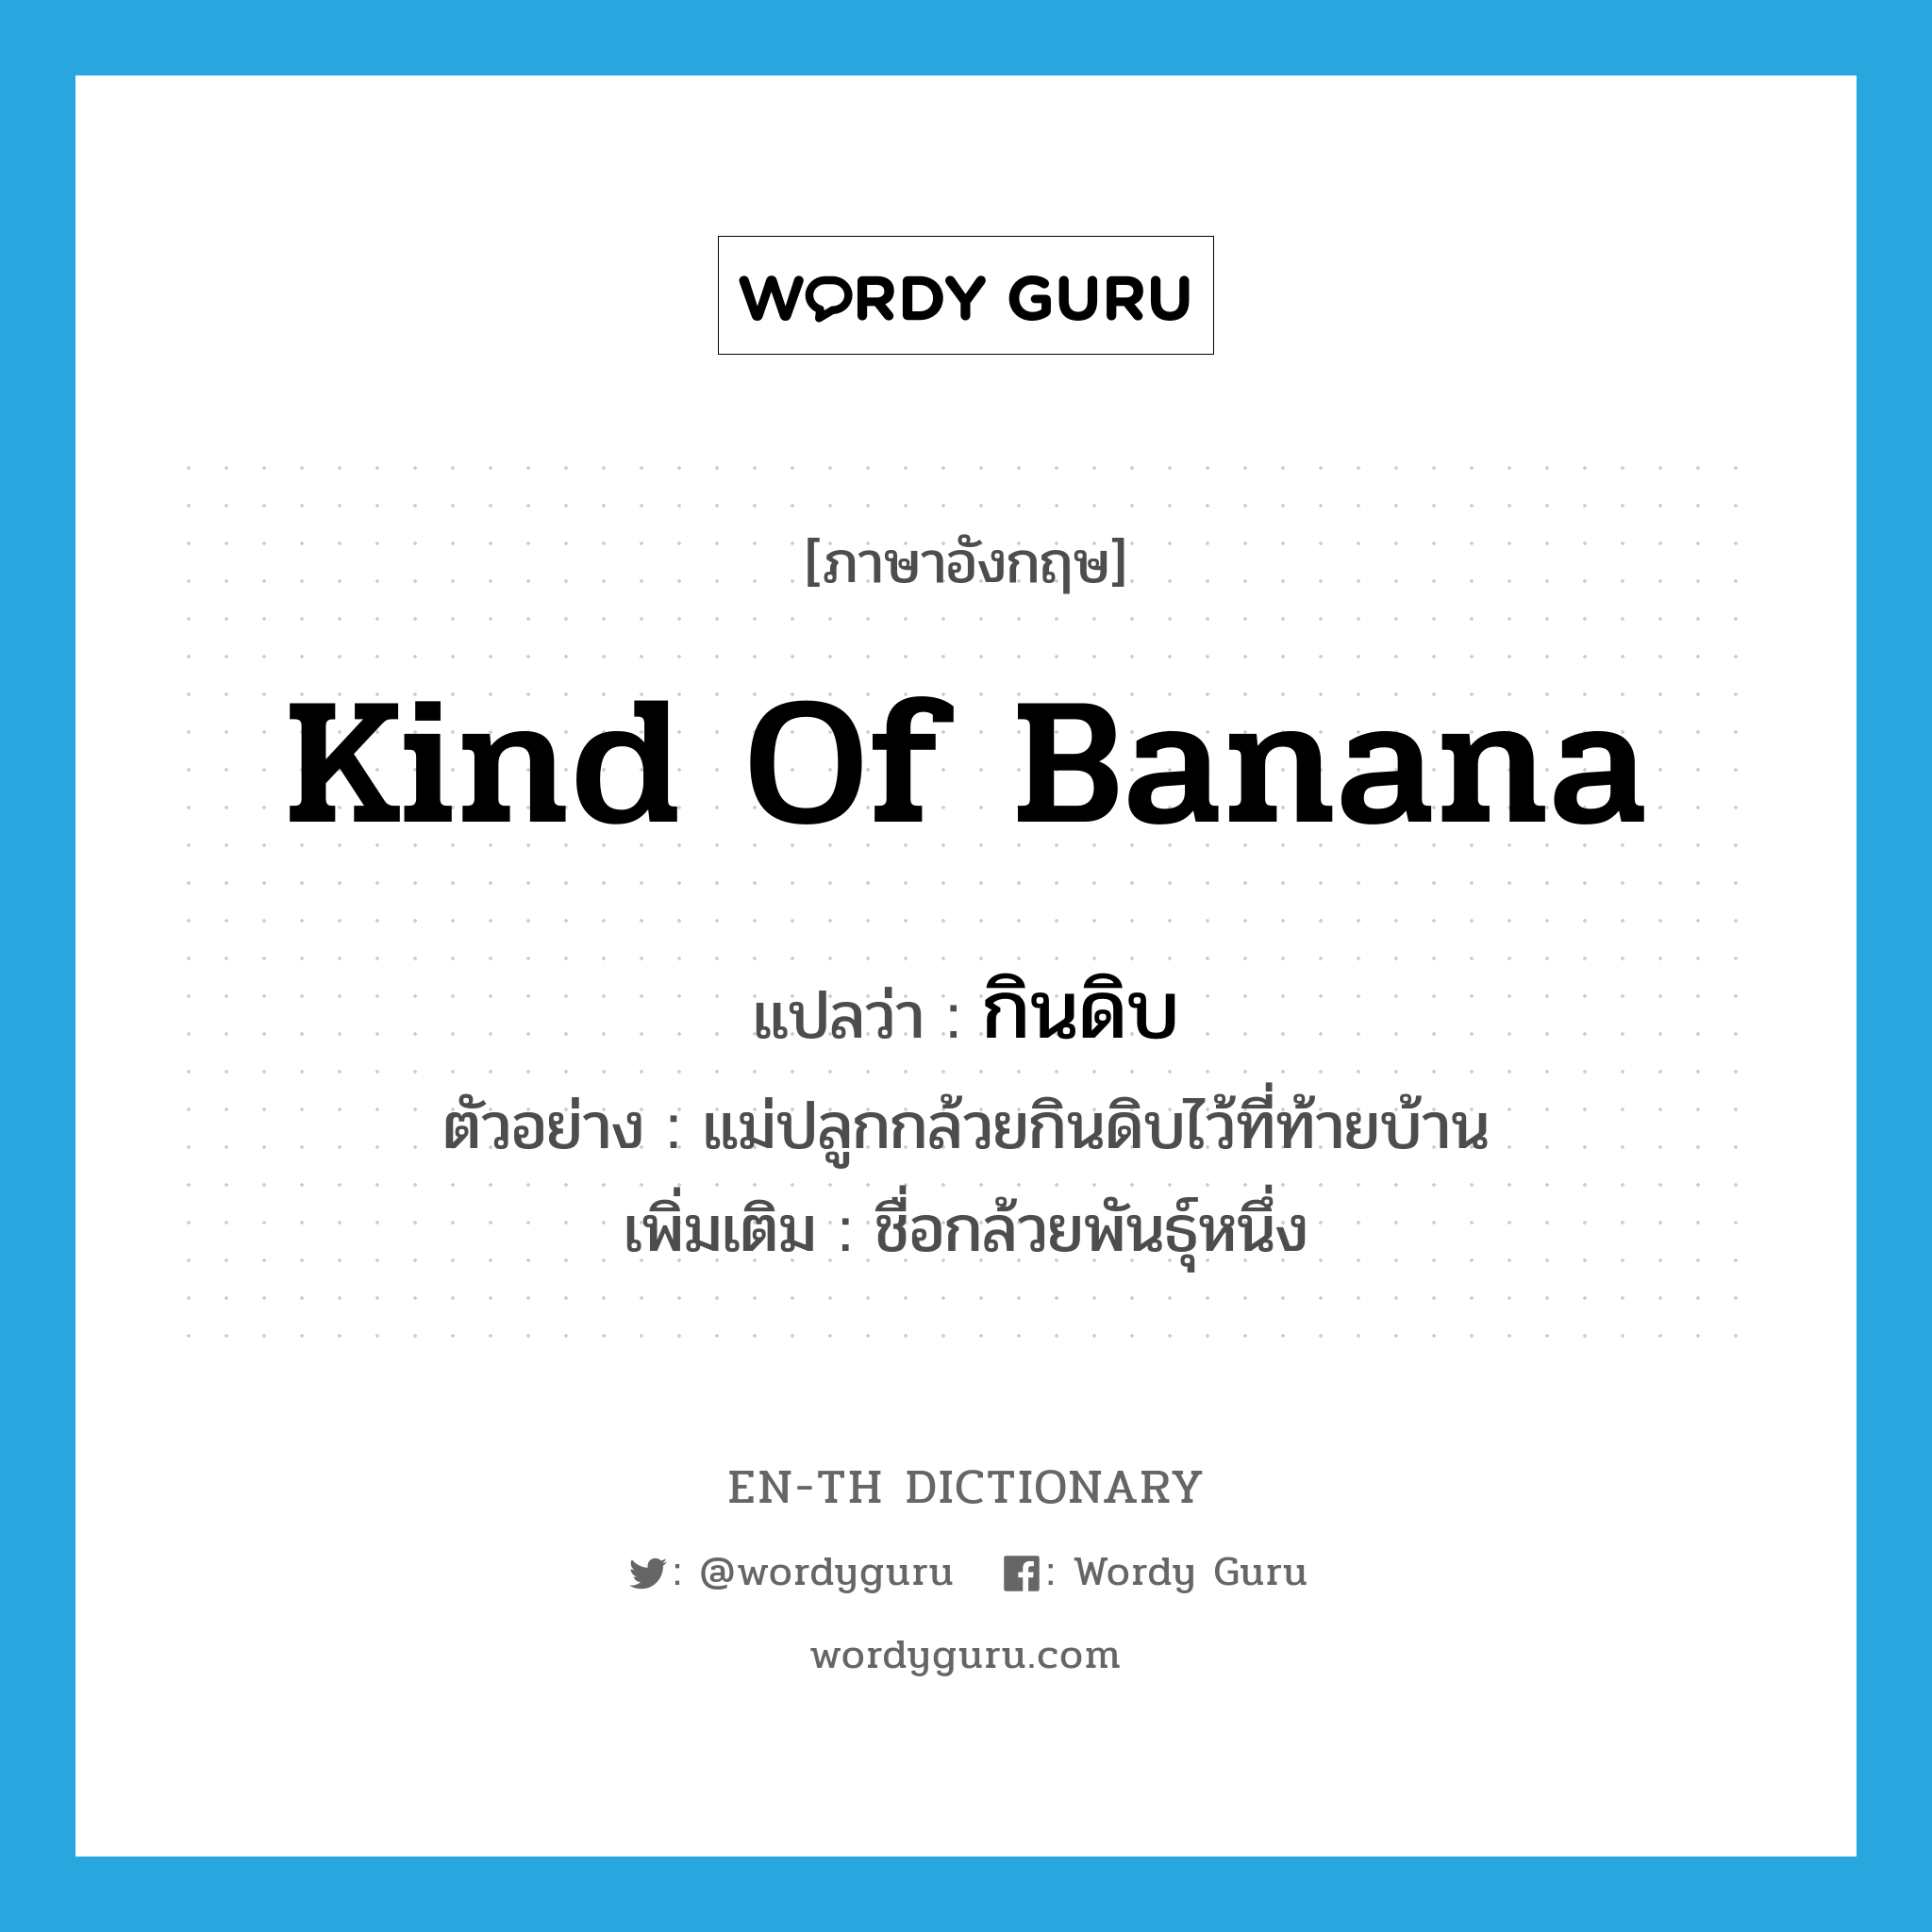 kind of banana แปลว่า?, คำศัพท์ภาษาอังกฤษ kind of banana แปลว่า กินดิบ ประเภท N ตัวอย่าง แม่ปลูกกล้วยกินดิบไว้ที่ท้ายบ้าน เพิ่มเติม ชื่อกล้วยพันธุ์หนึ่ง หมวด N